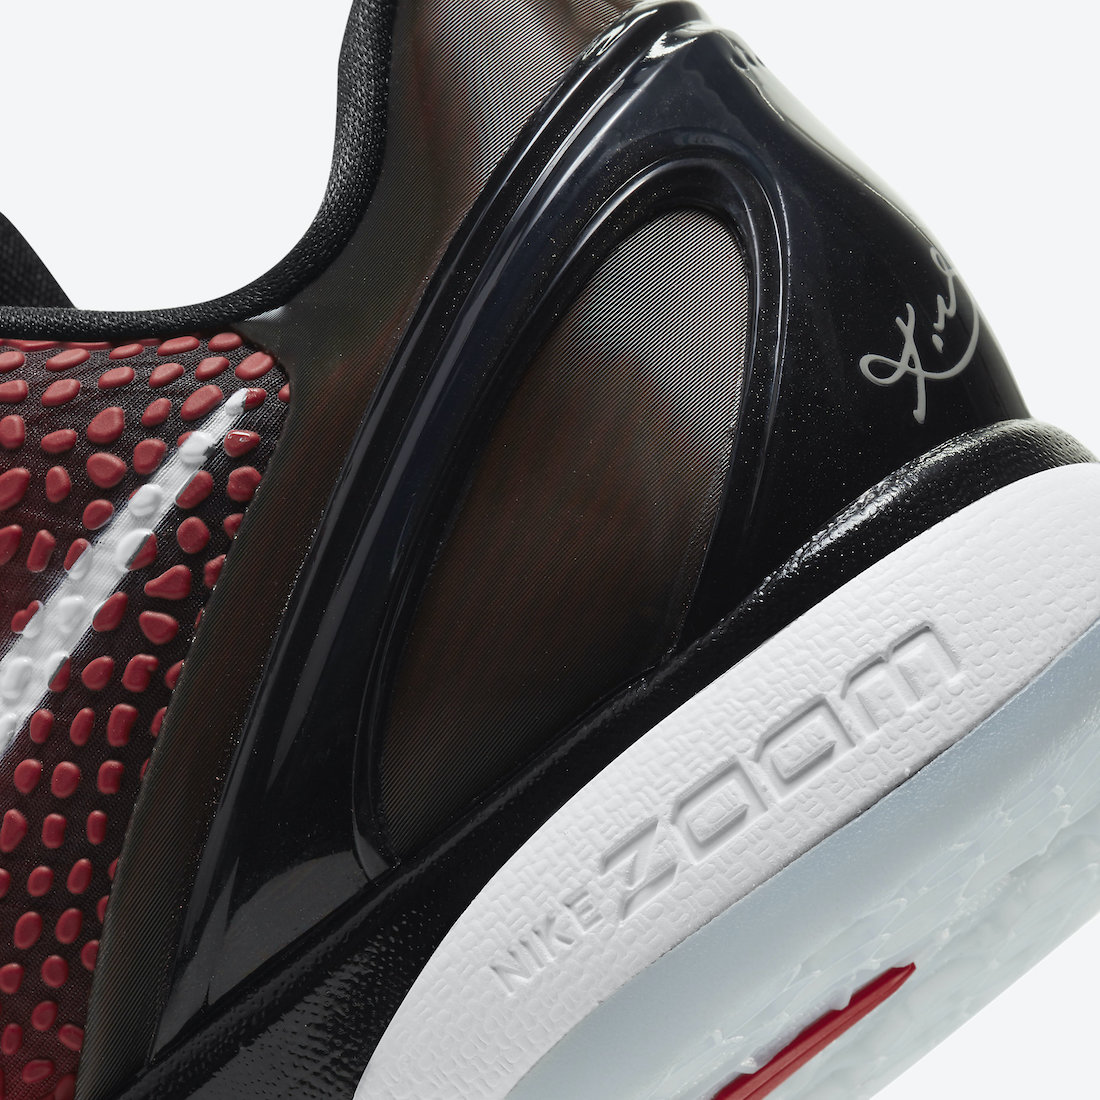 Nike Kobe 6 Protro All-Star DH9888-600 Release Date Price